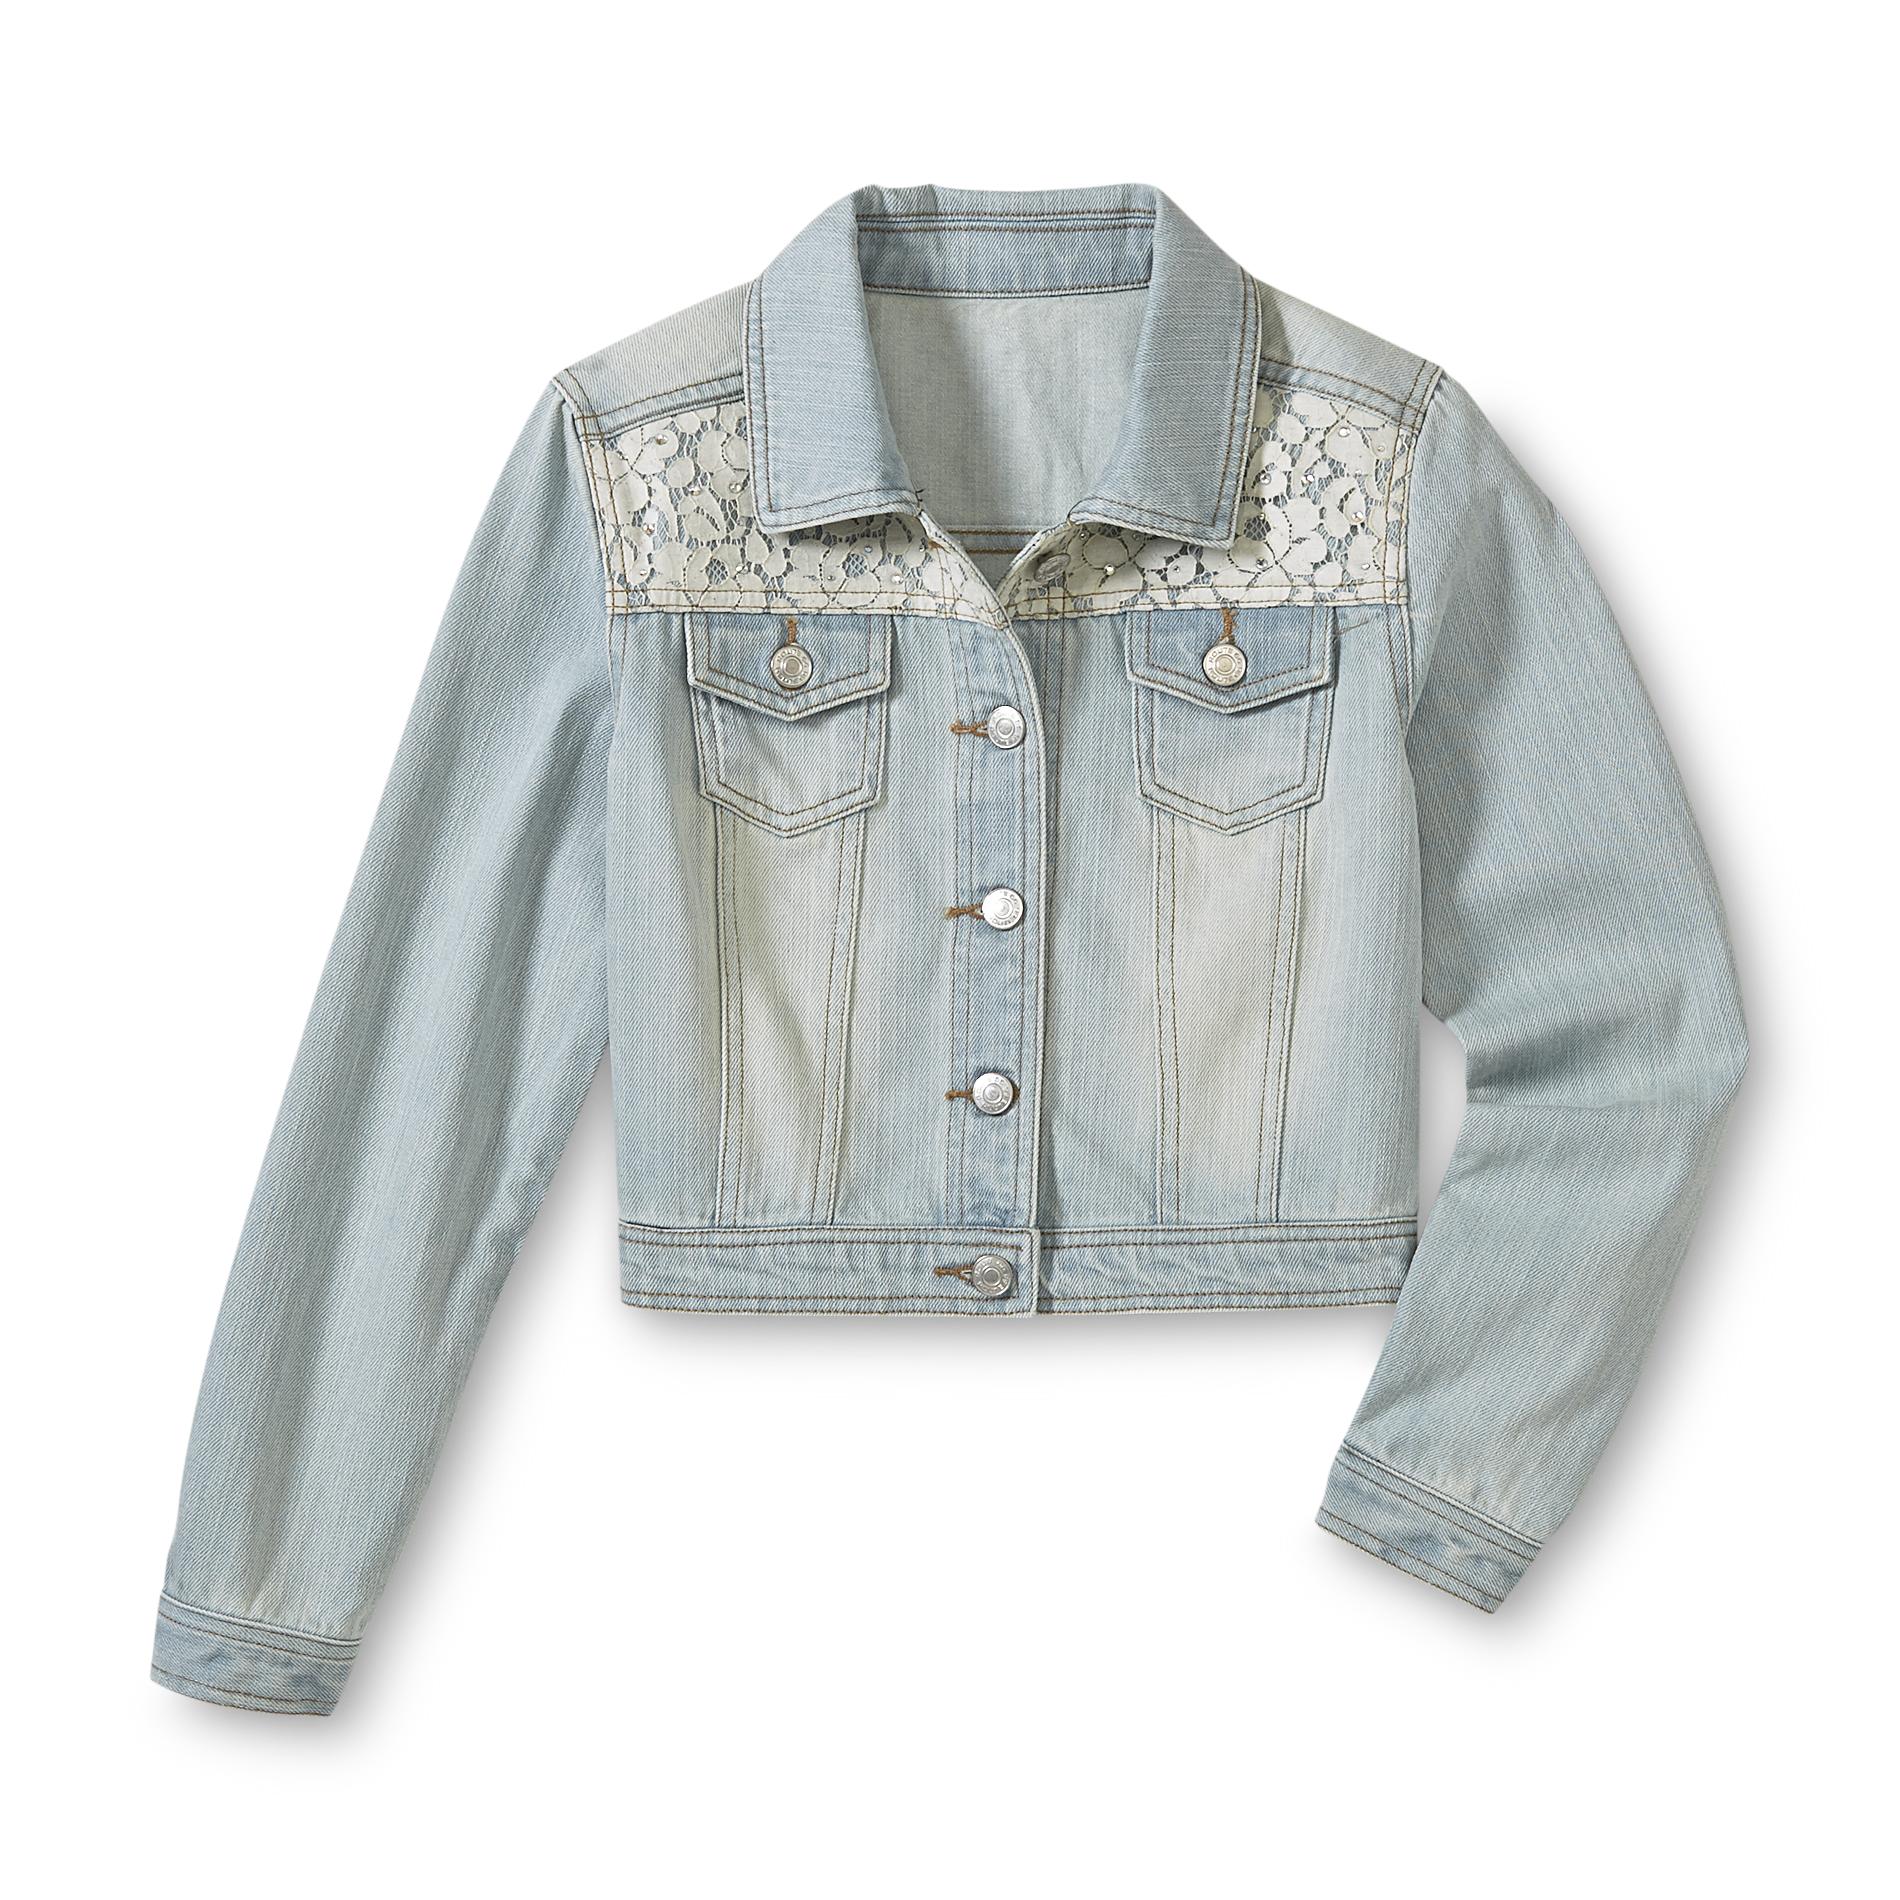 Route 66 Girl's Embellished Denim Jacket - Floral Lace